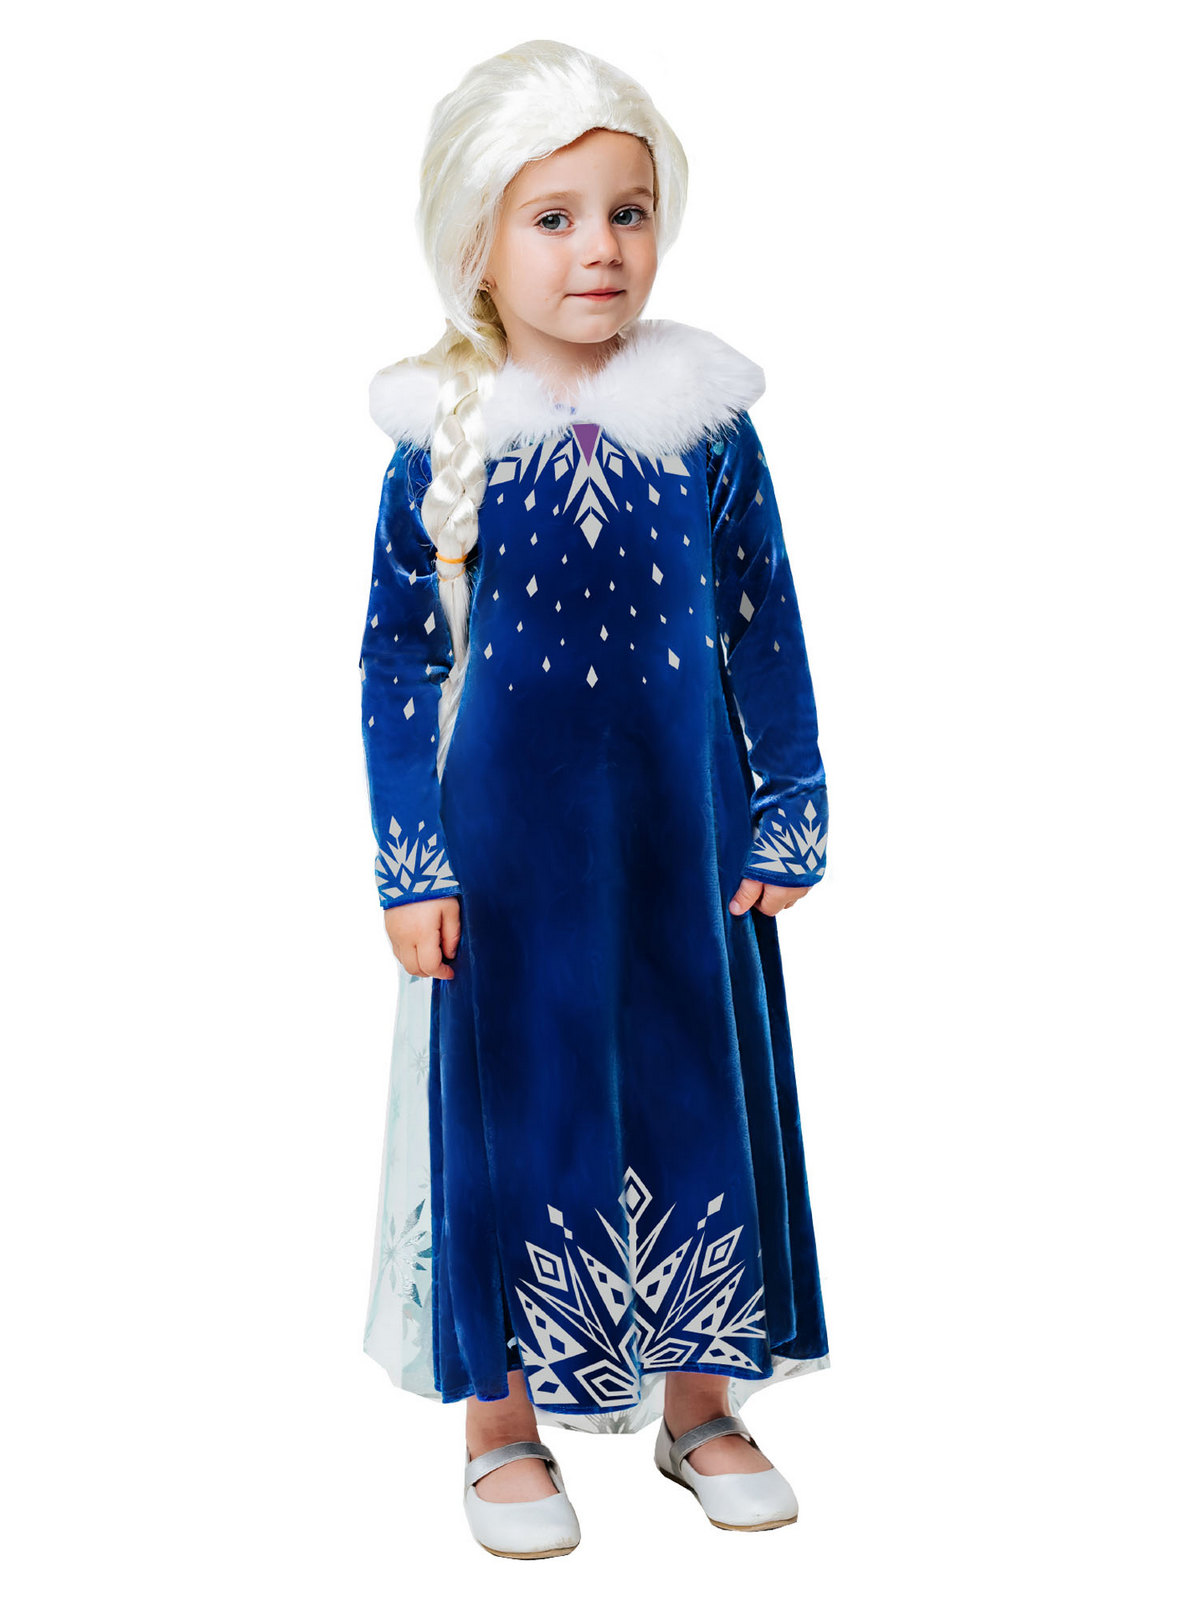 Карнавальный костюм Batik 9004 к-21 Эльза зимнее платье, синий, 104 карнавальный костюм batik 9004 к 21 эльза зимнее платье синий 116